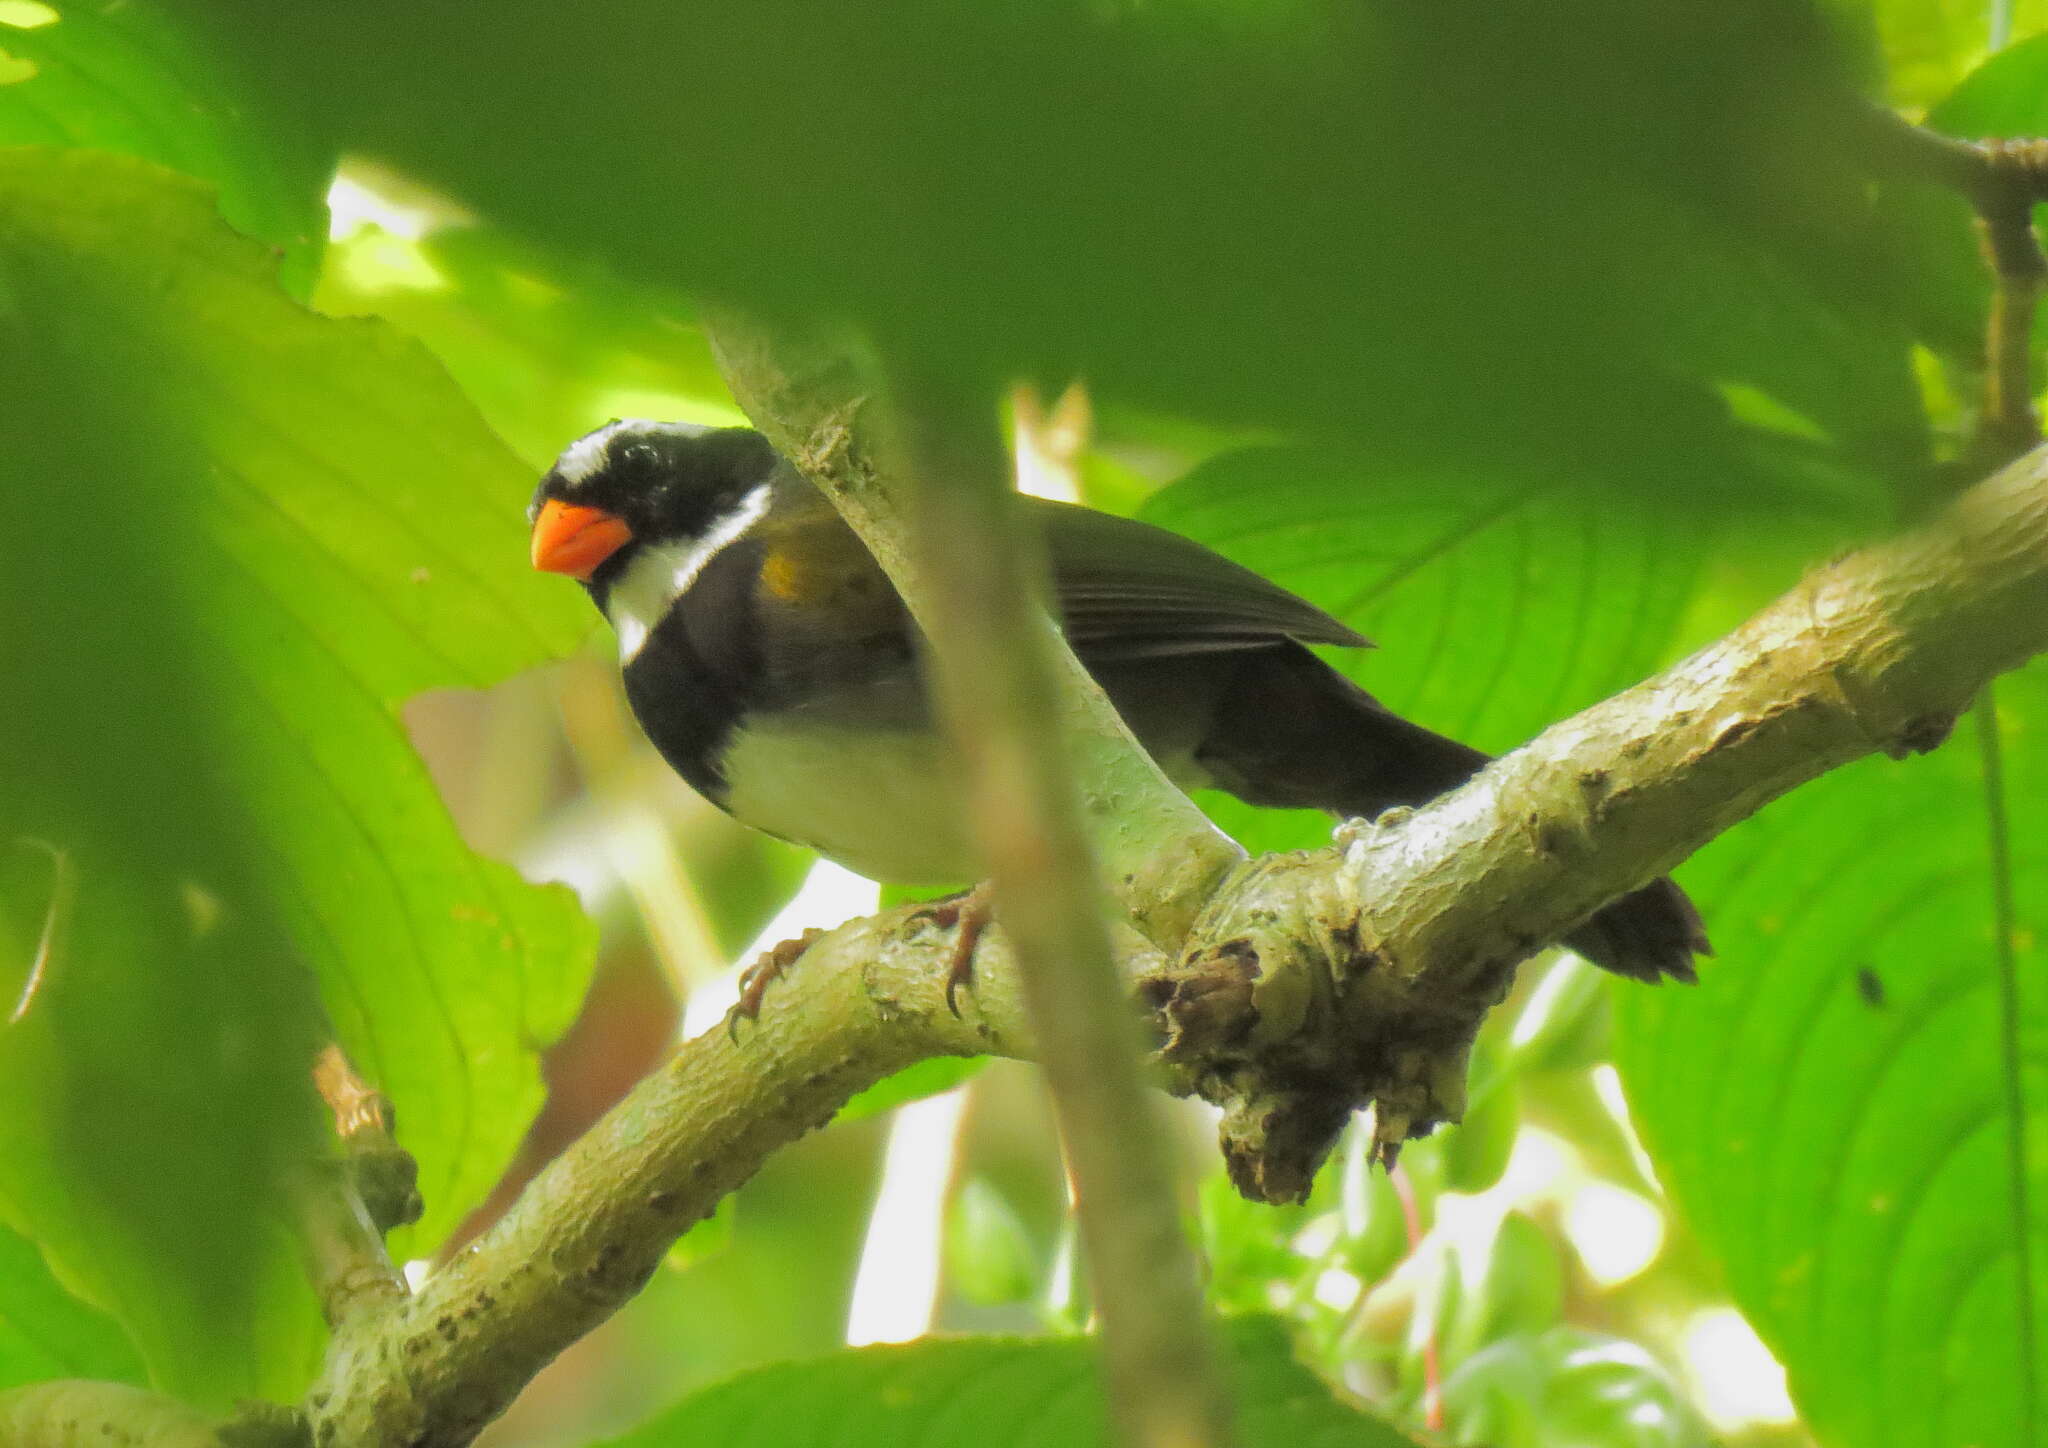 Image of Orange-billed Sparrow